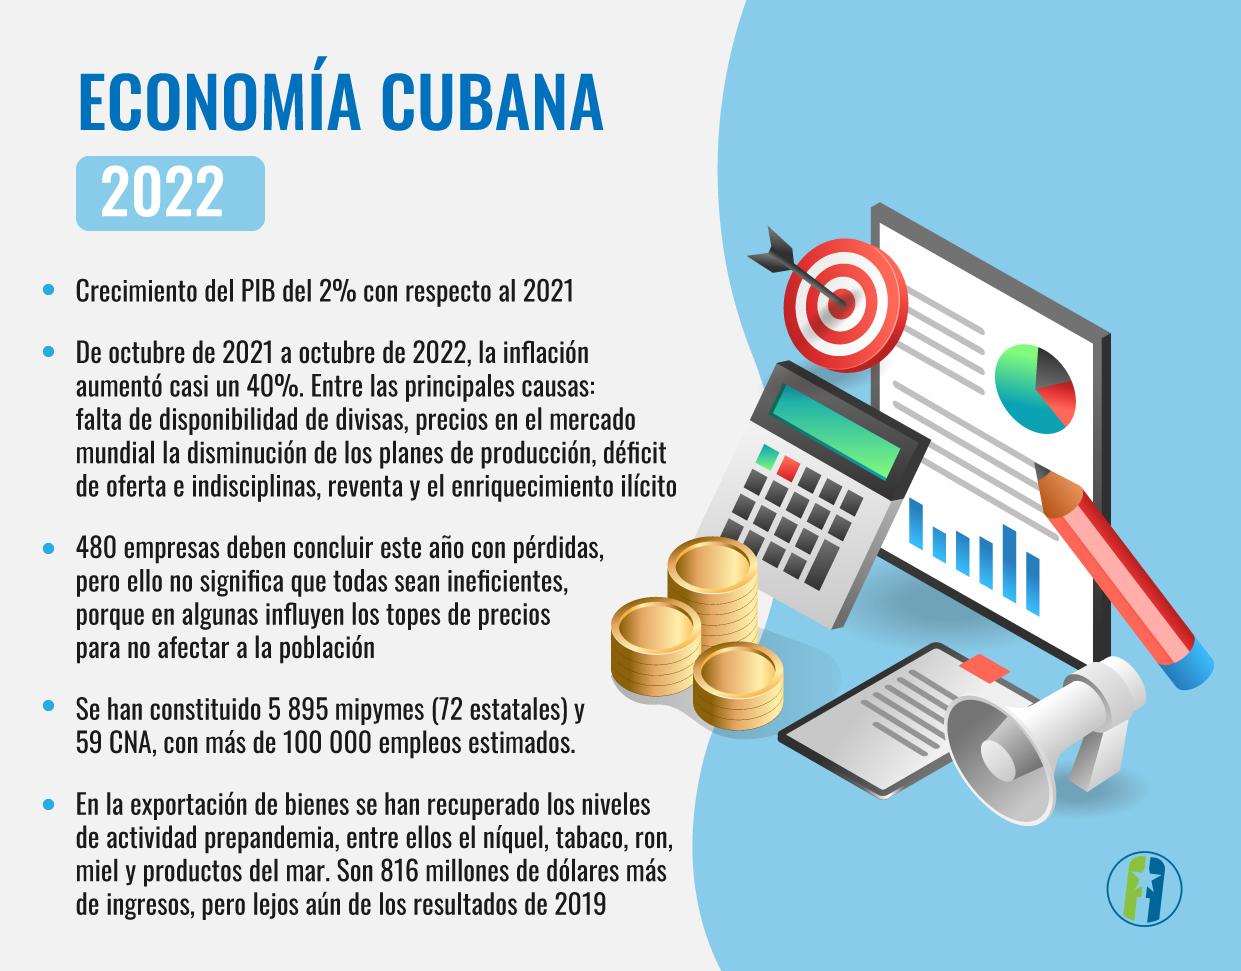 Economía cubana en 2022 - Resumen